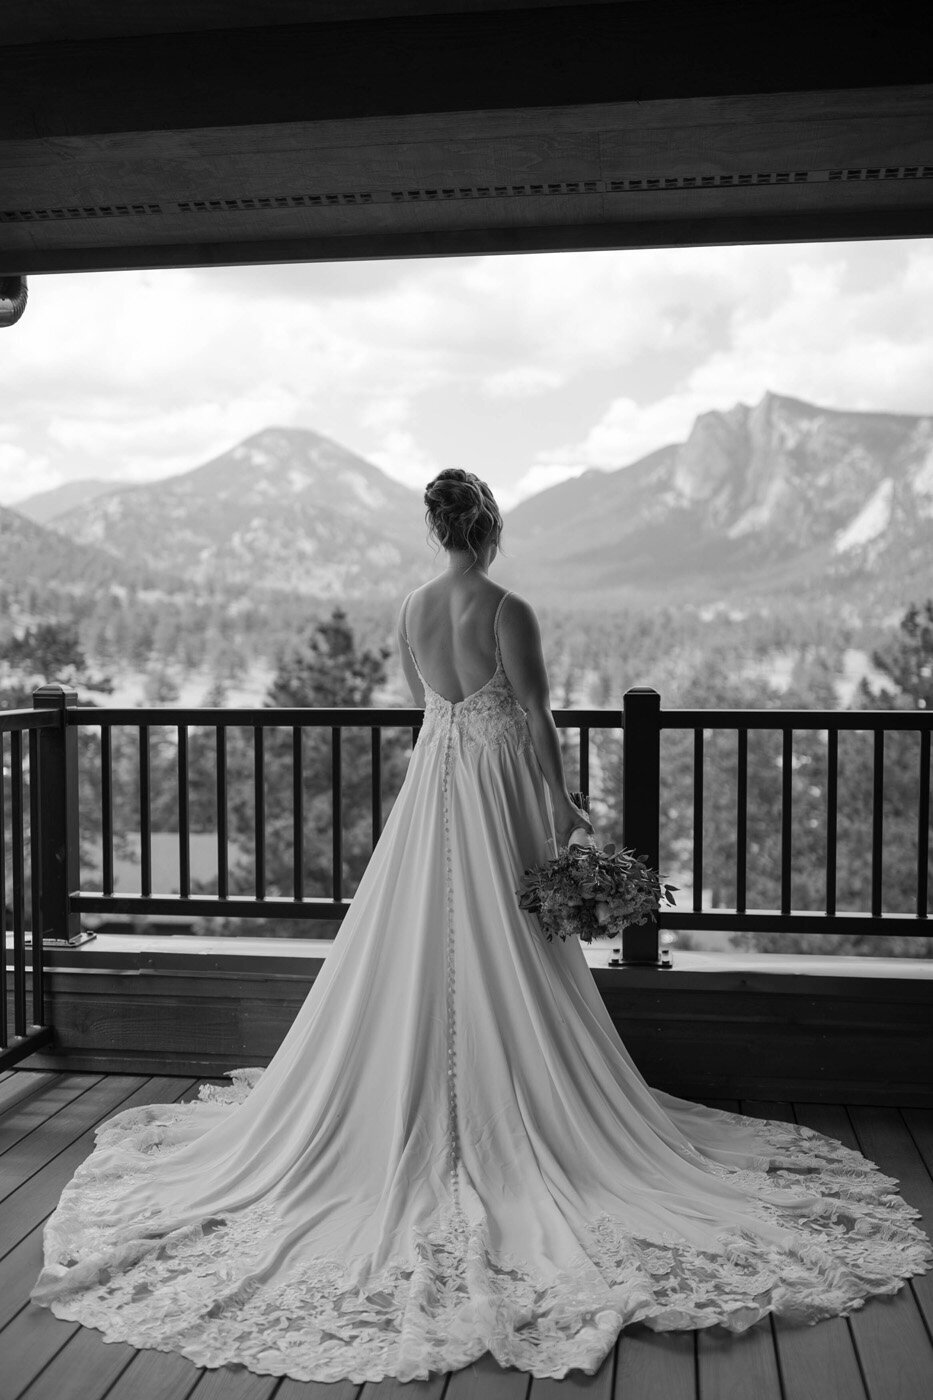 Oklahoma Colorado Wedding Photographer - Morgan Asaad05